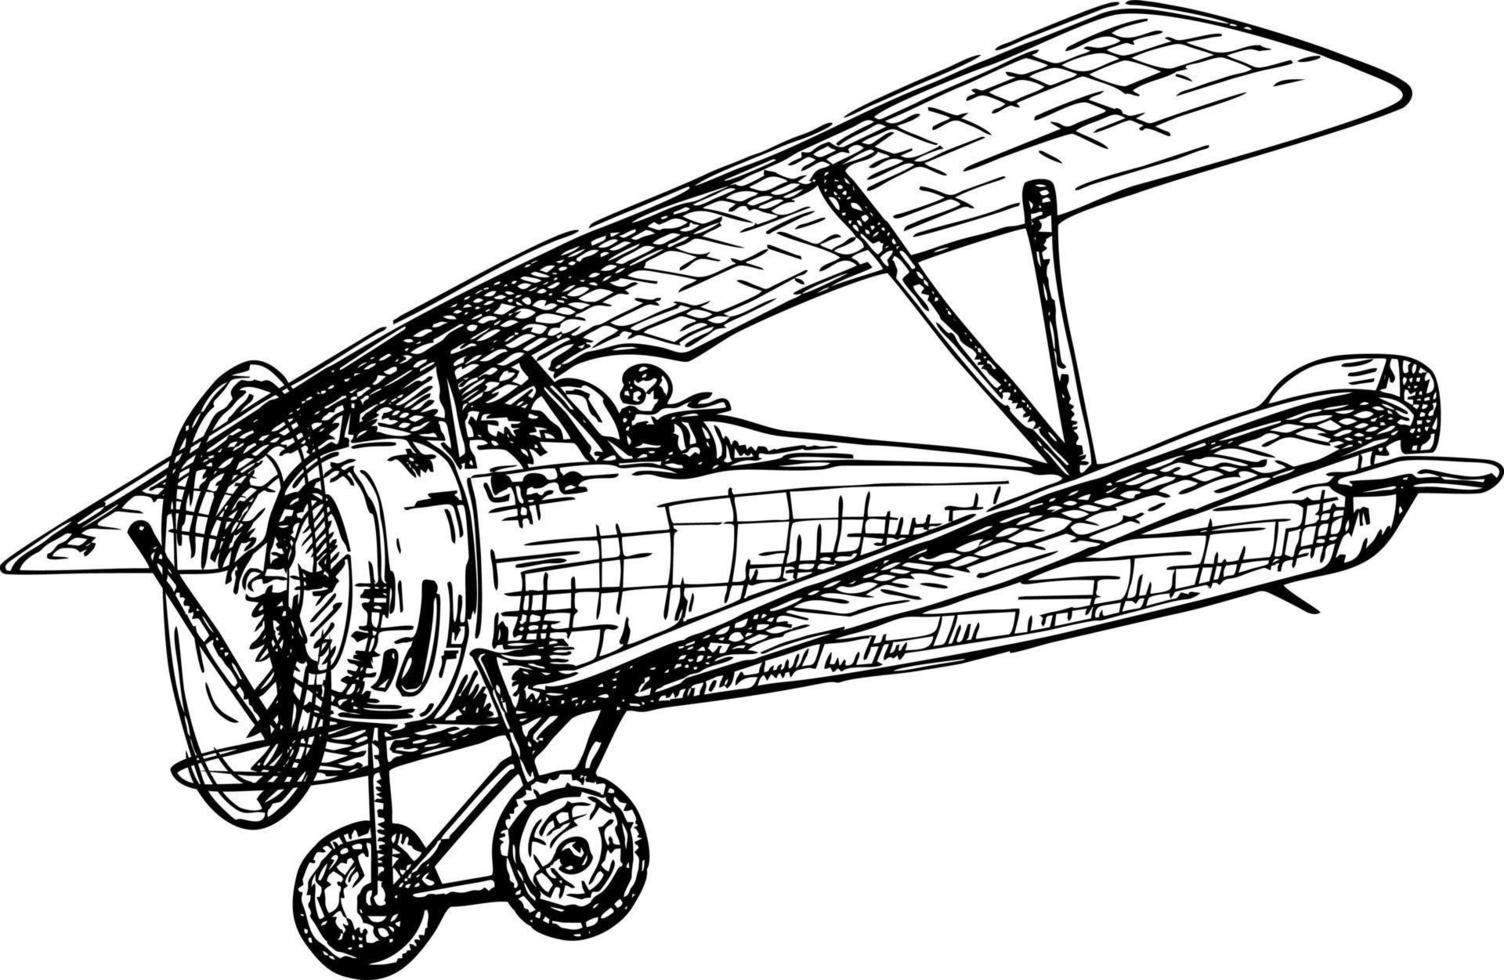 vuelo en biplano. biplano dibujado a mano vintage. ilustración de avión vectorial. un viejo avión. boceto de avión retro vector